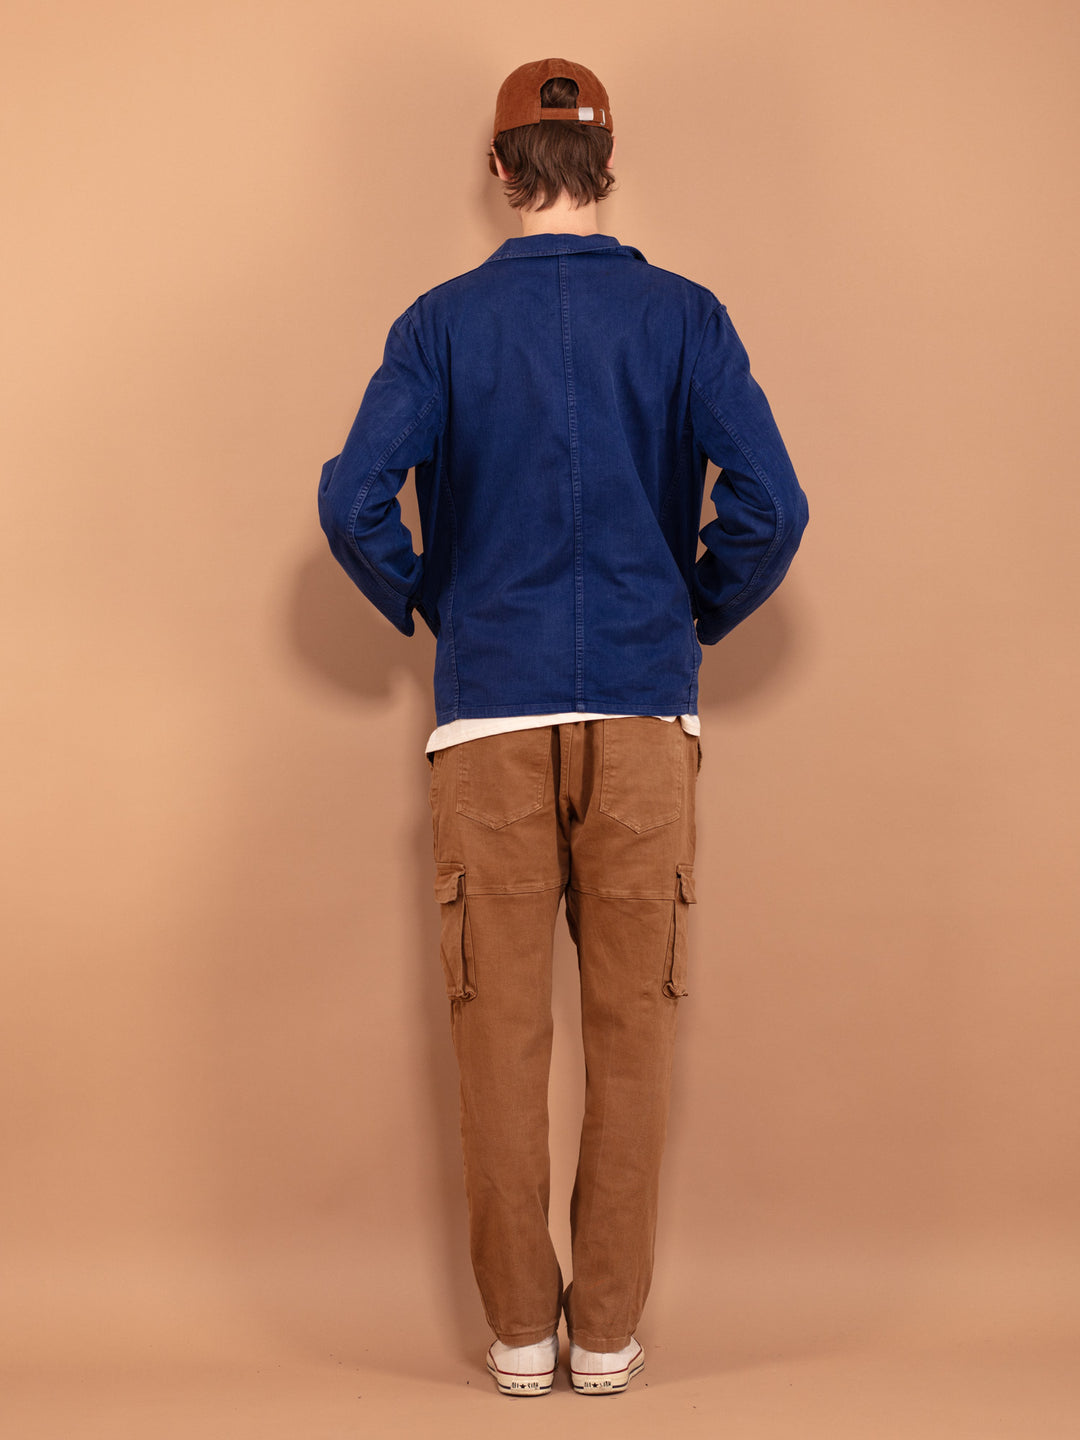 Vintage 80's Men Bleu-de-travail Work Jacket